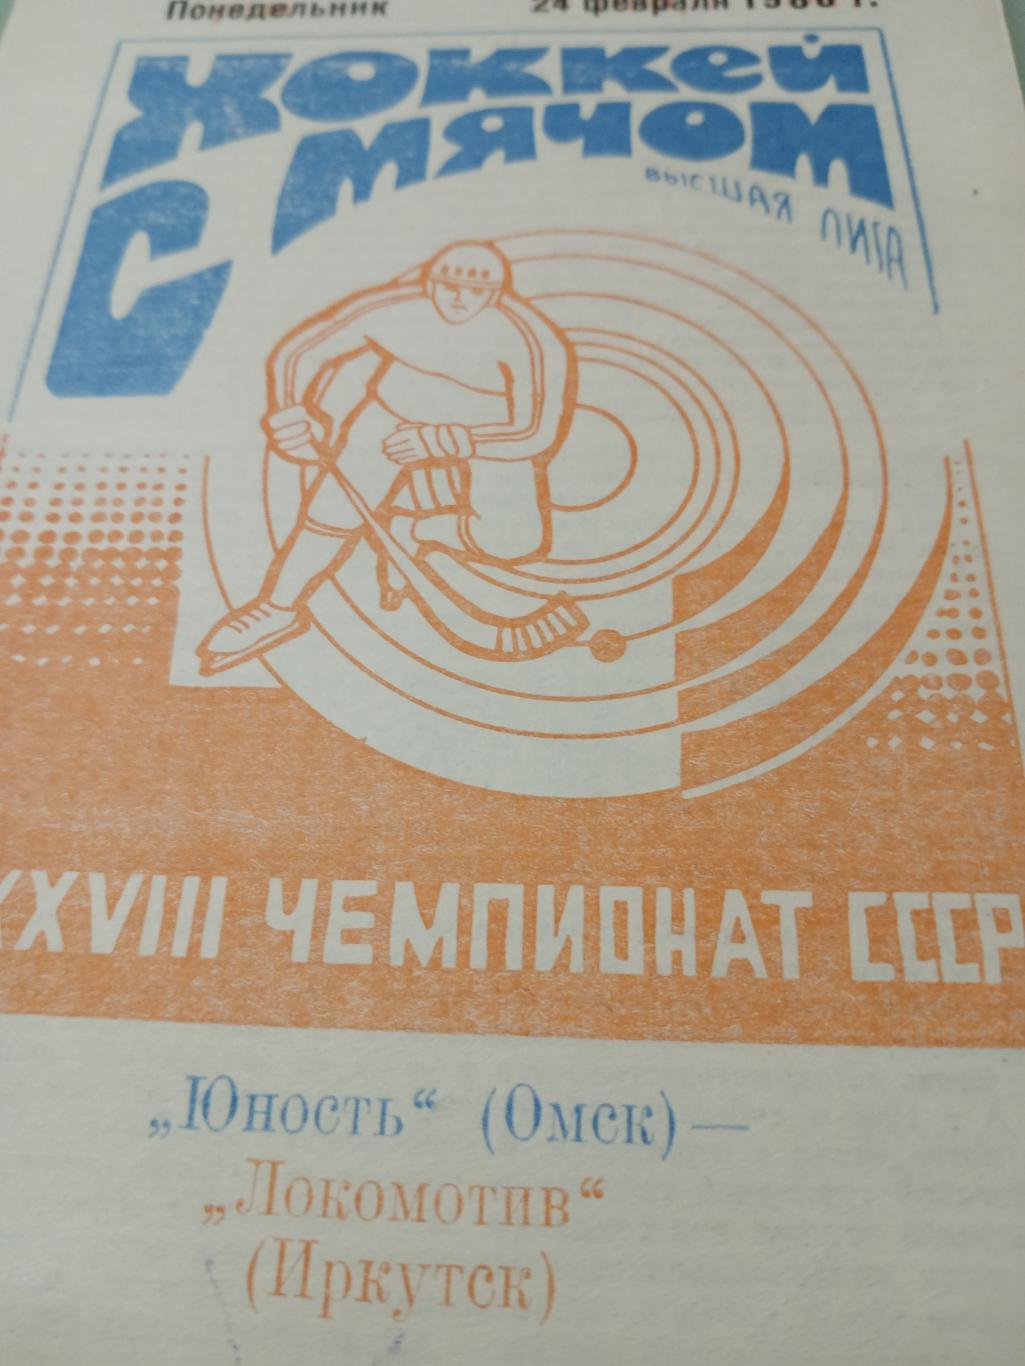 Юность Омск - Локомотив Иркутск. 24 февраля 1986 год